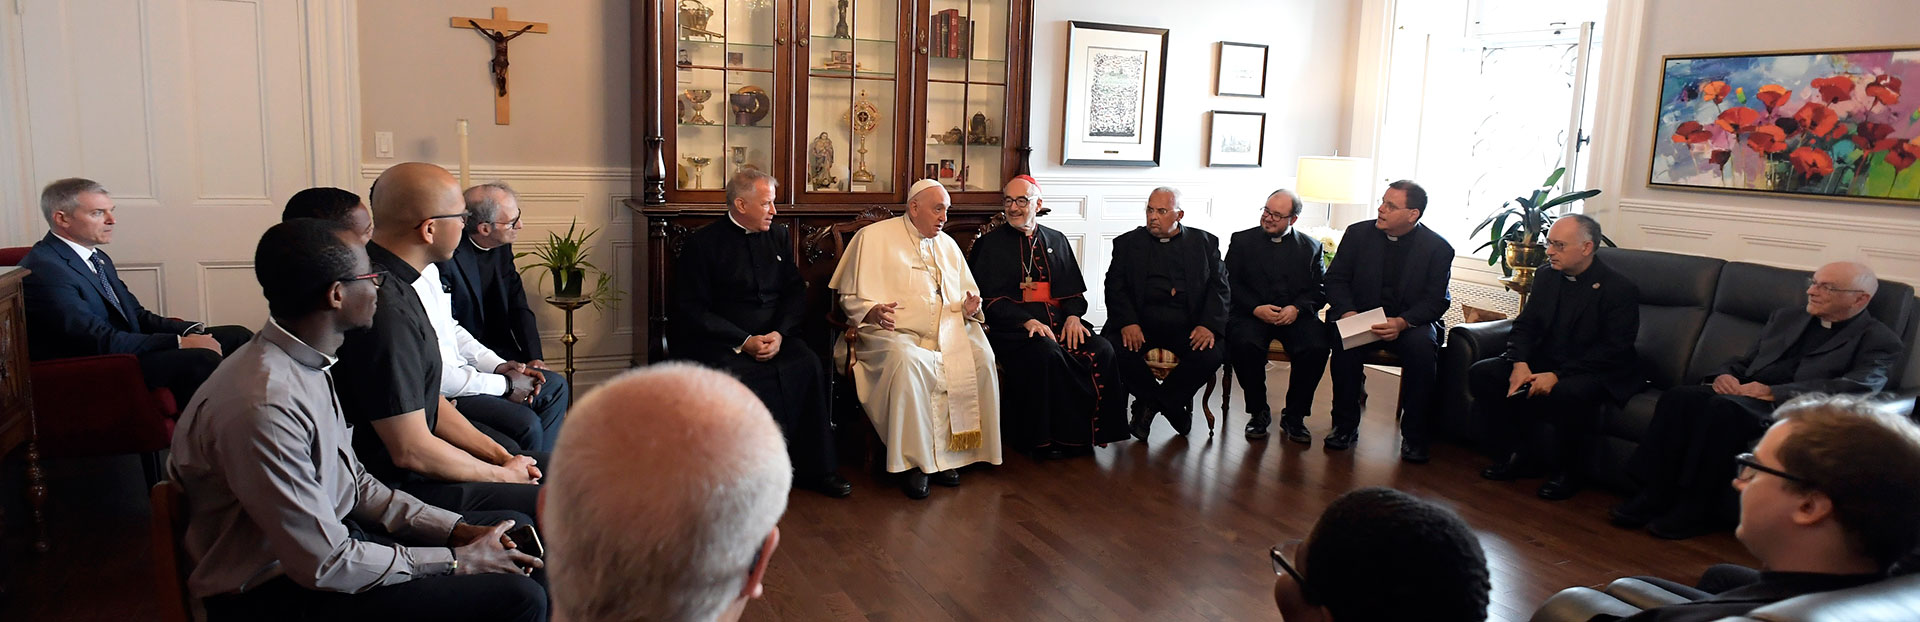 El Papa Francisco con sus compañeros jesuitas en la ciudad de Quebec